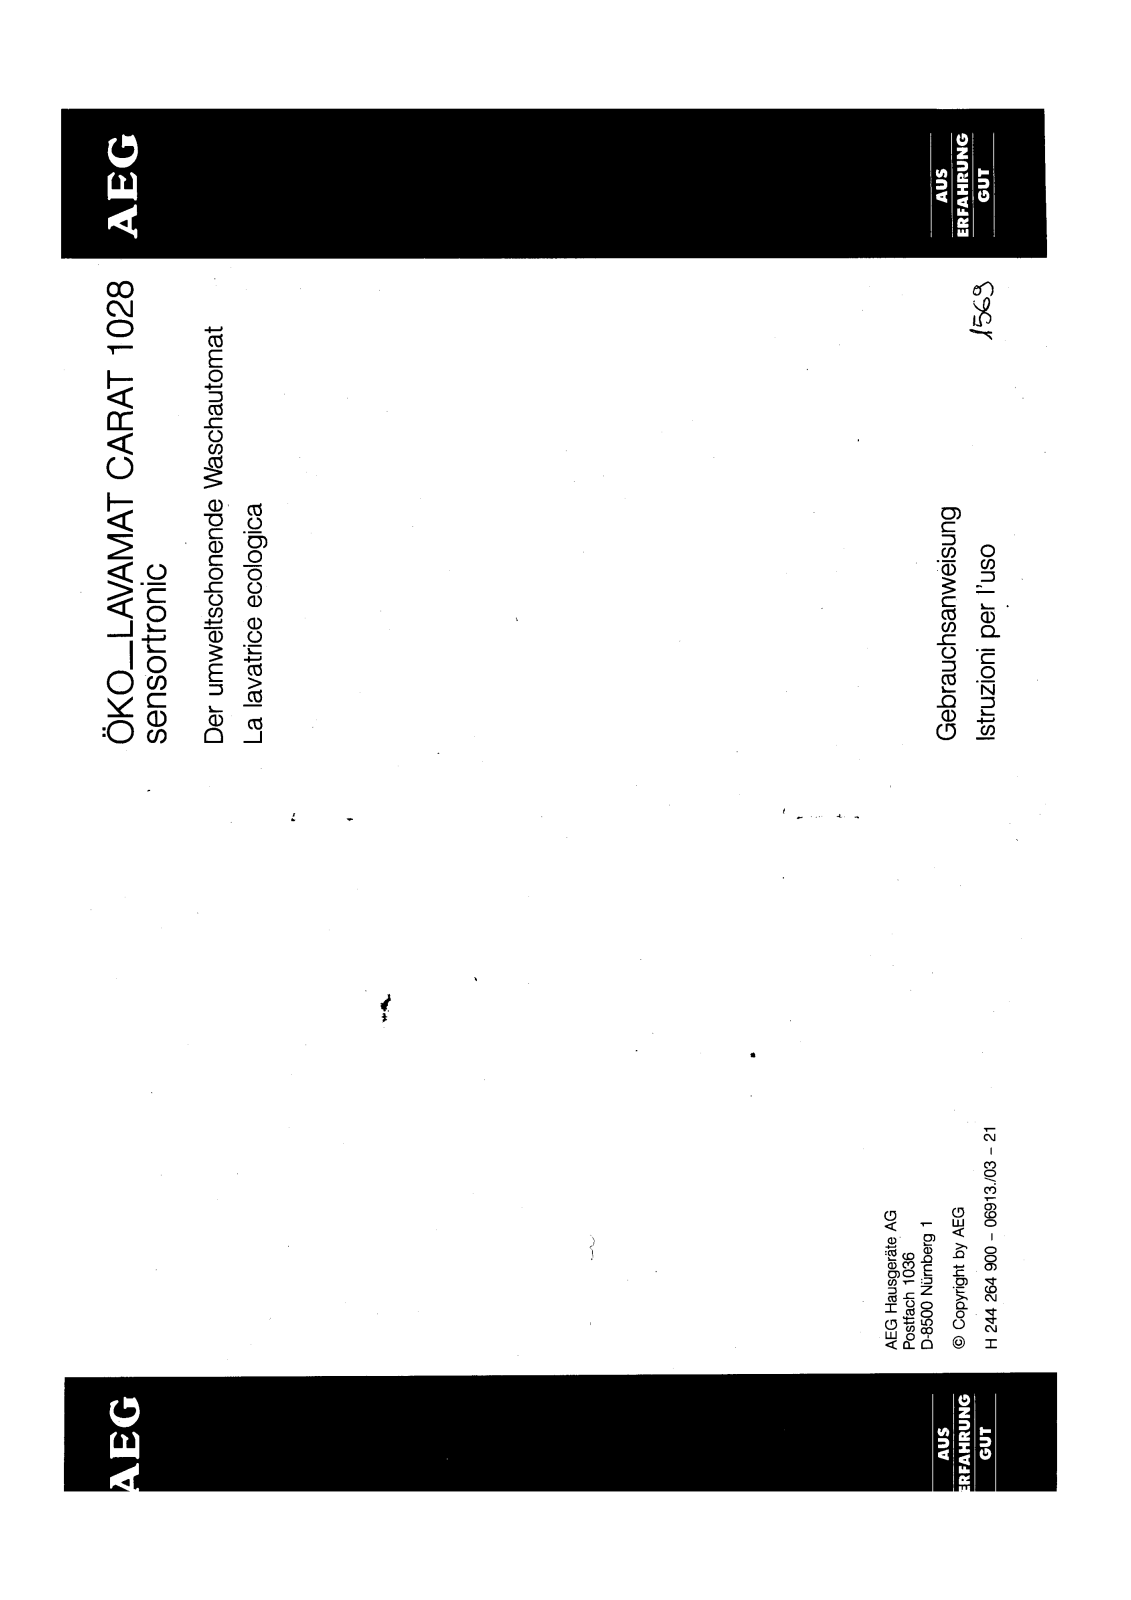 AEG LAVCARAT 1028 User Manual